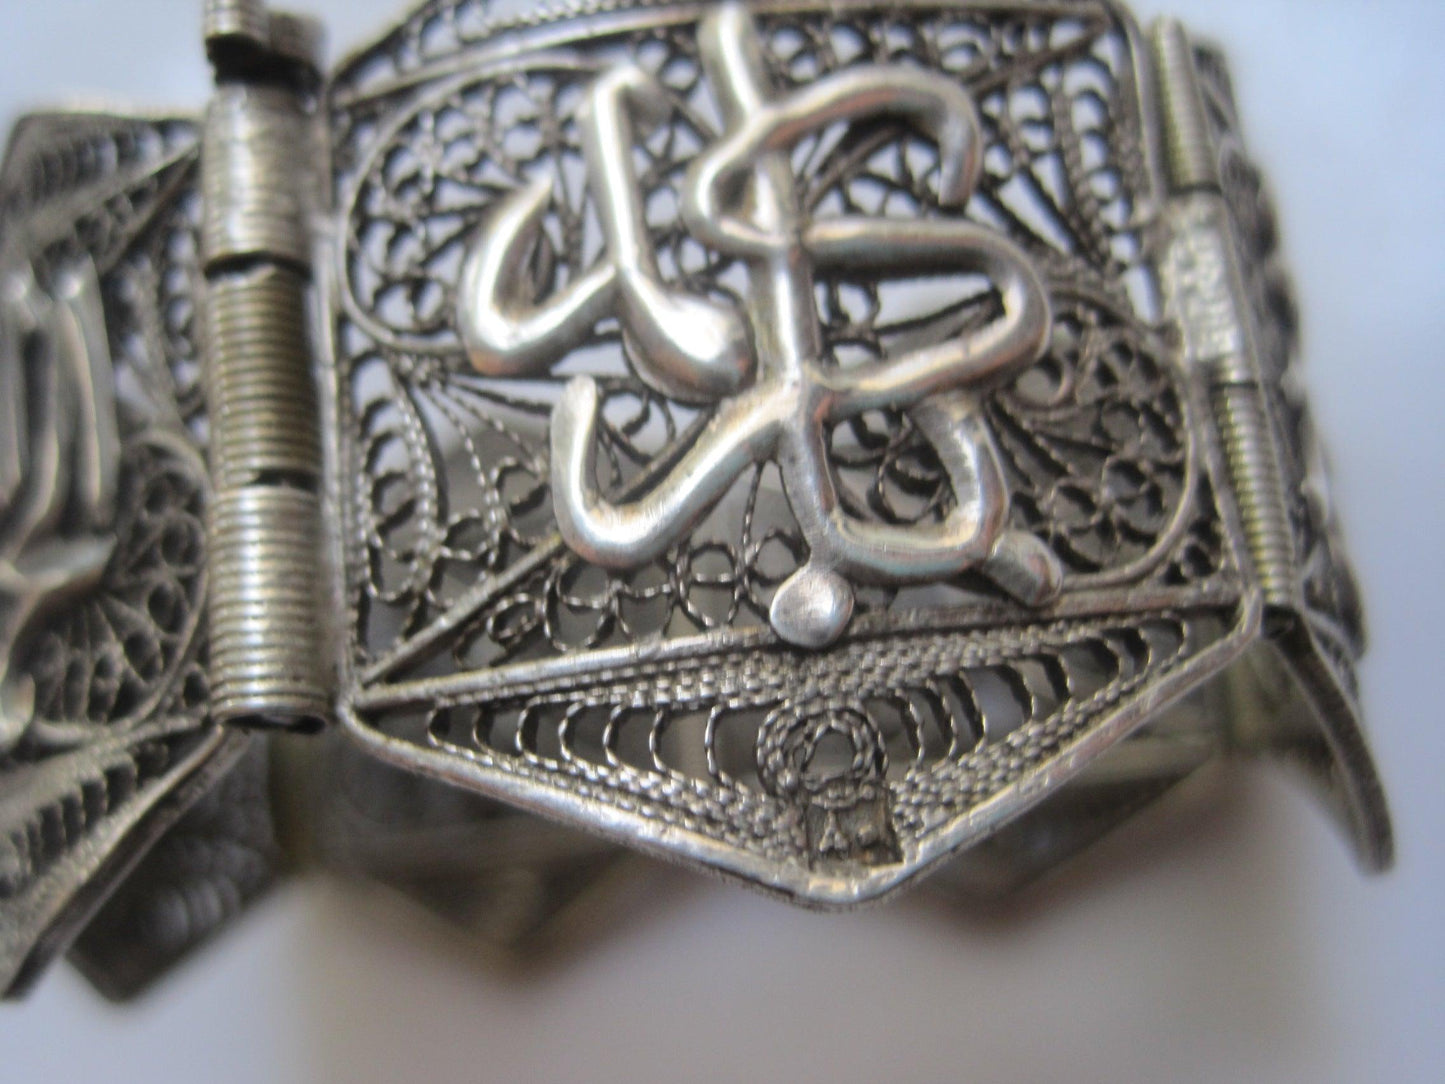 bracelet from Egypt